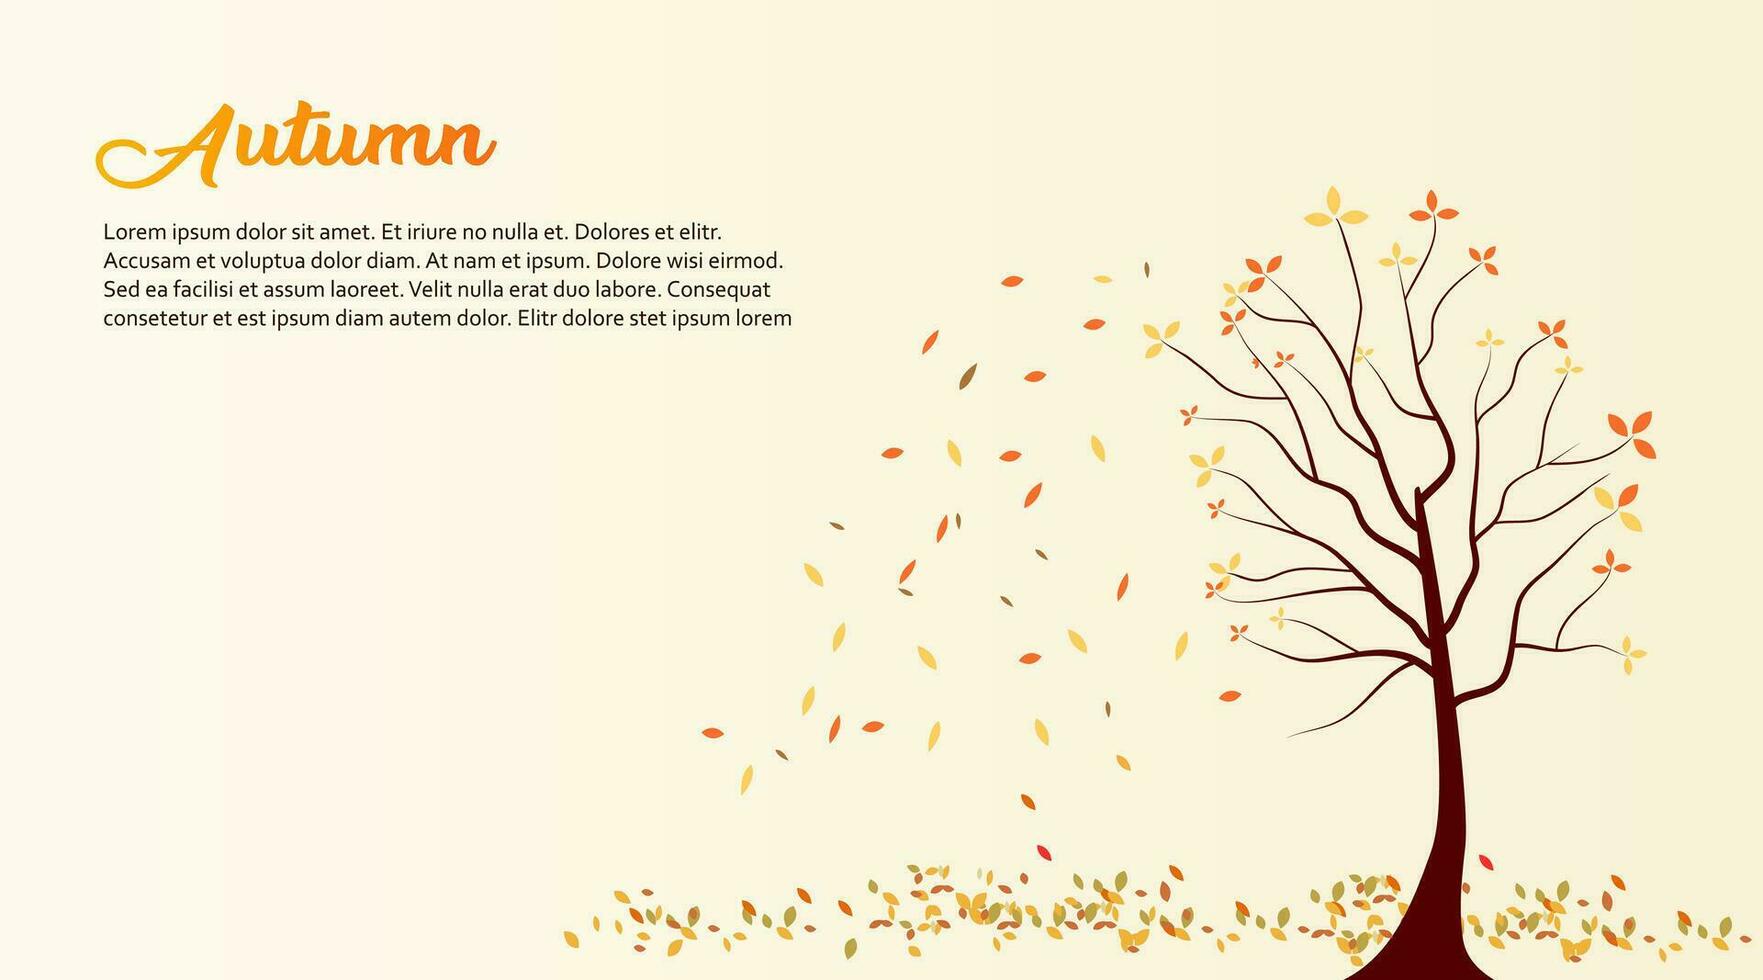 fundo vetorial com folhas de outono caindo vermelhas, laranja, marrons e amarelas vetor